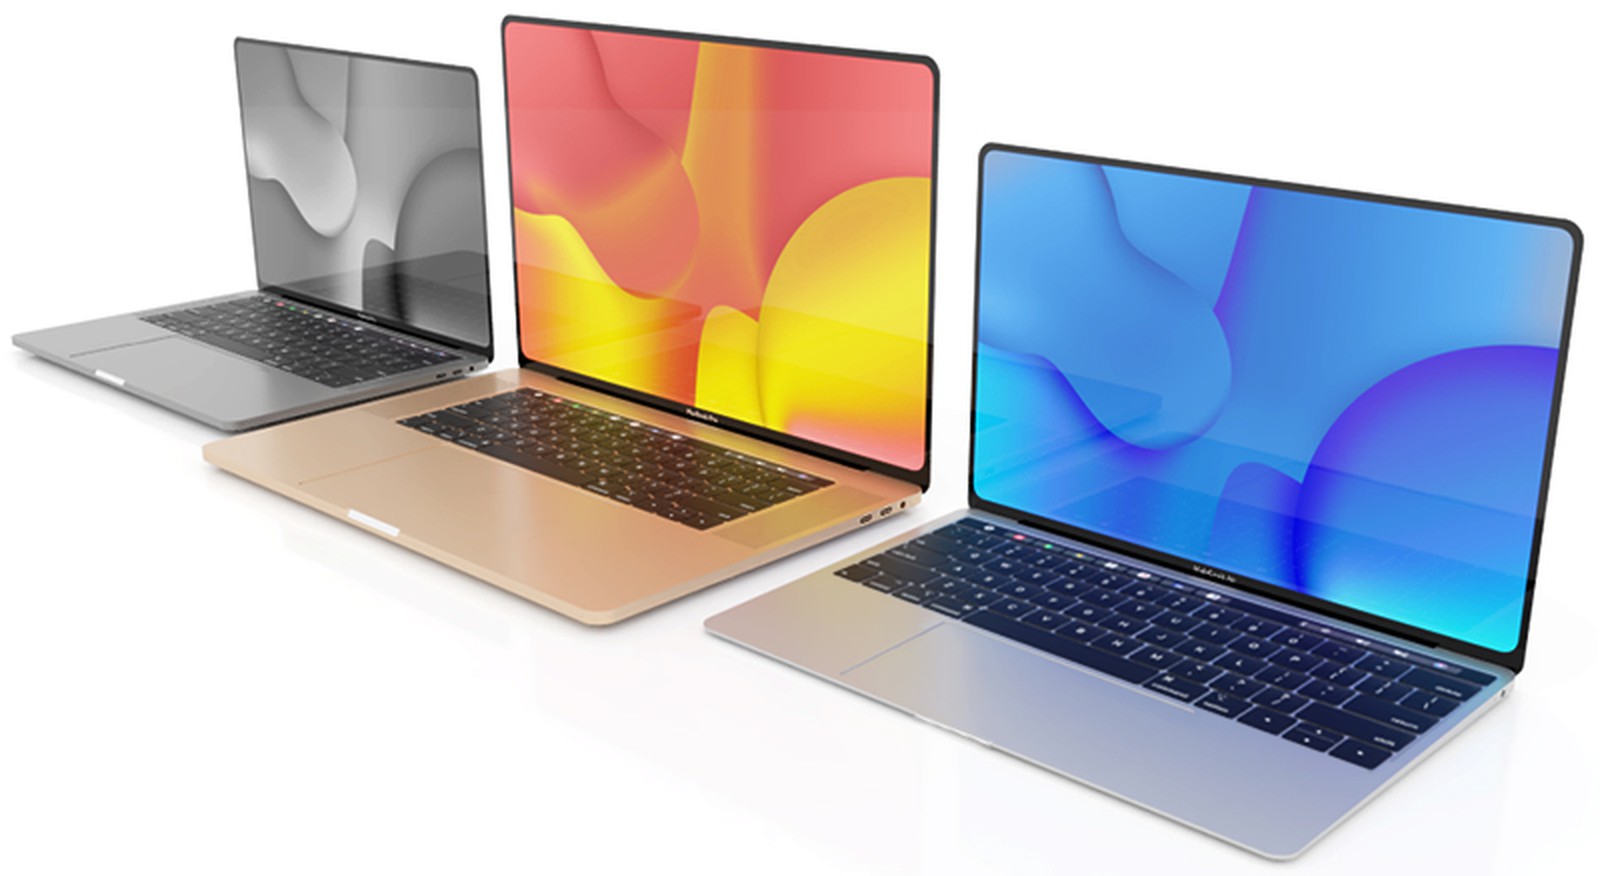 2021년 새로운 디자인의 맥북은 애플 실리콘칩 모델과 인텔칩 모두 출시 - 플랜김